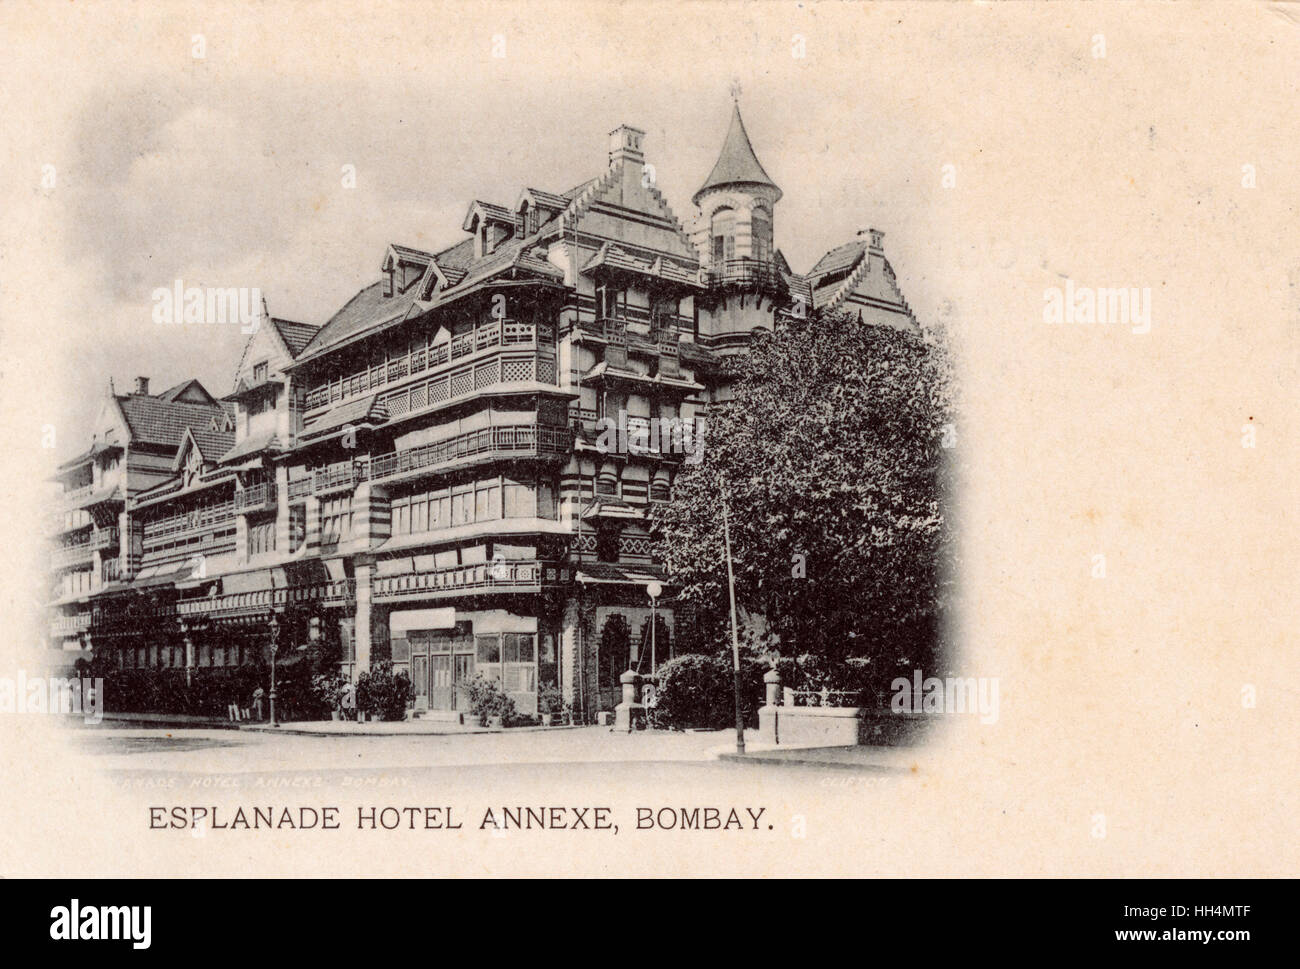 Esplanade Hotel Annexe, Bombay, India Stock Photo